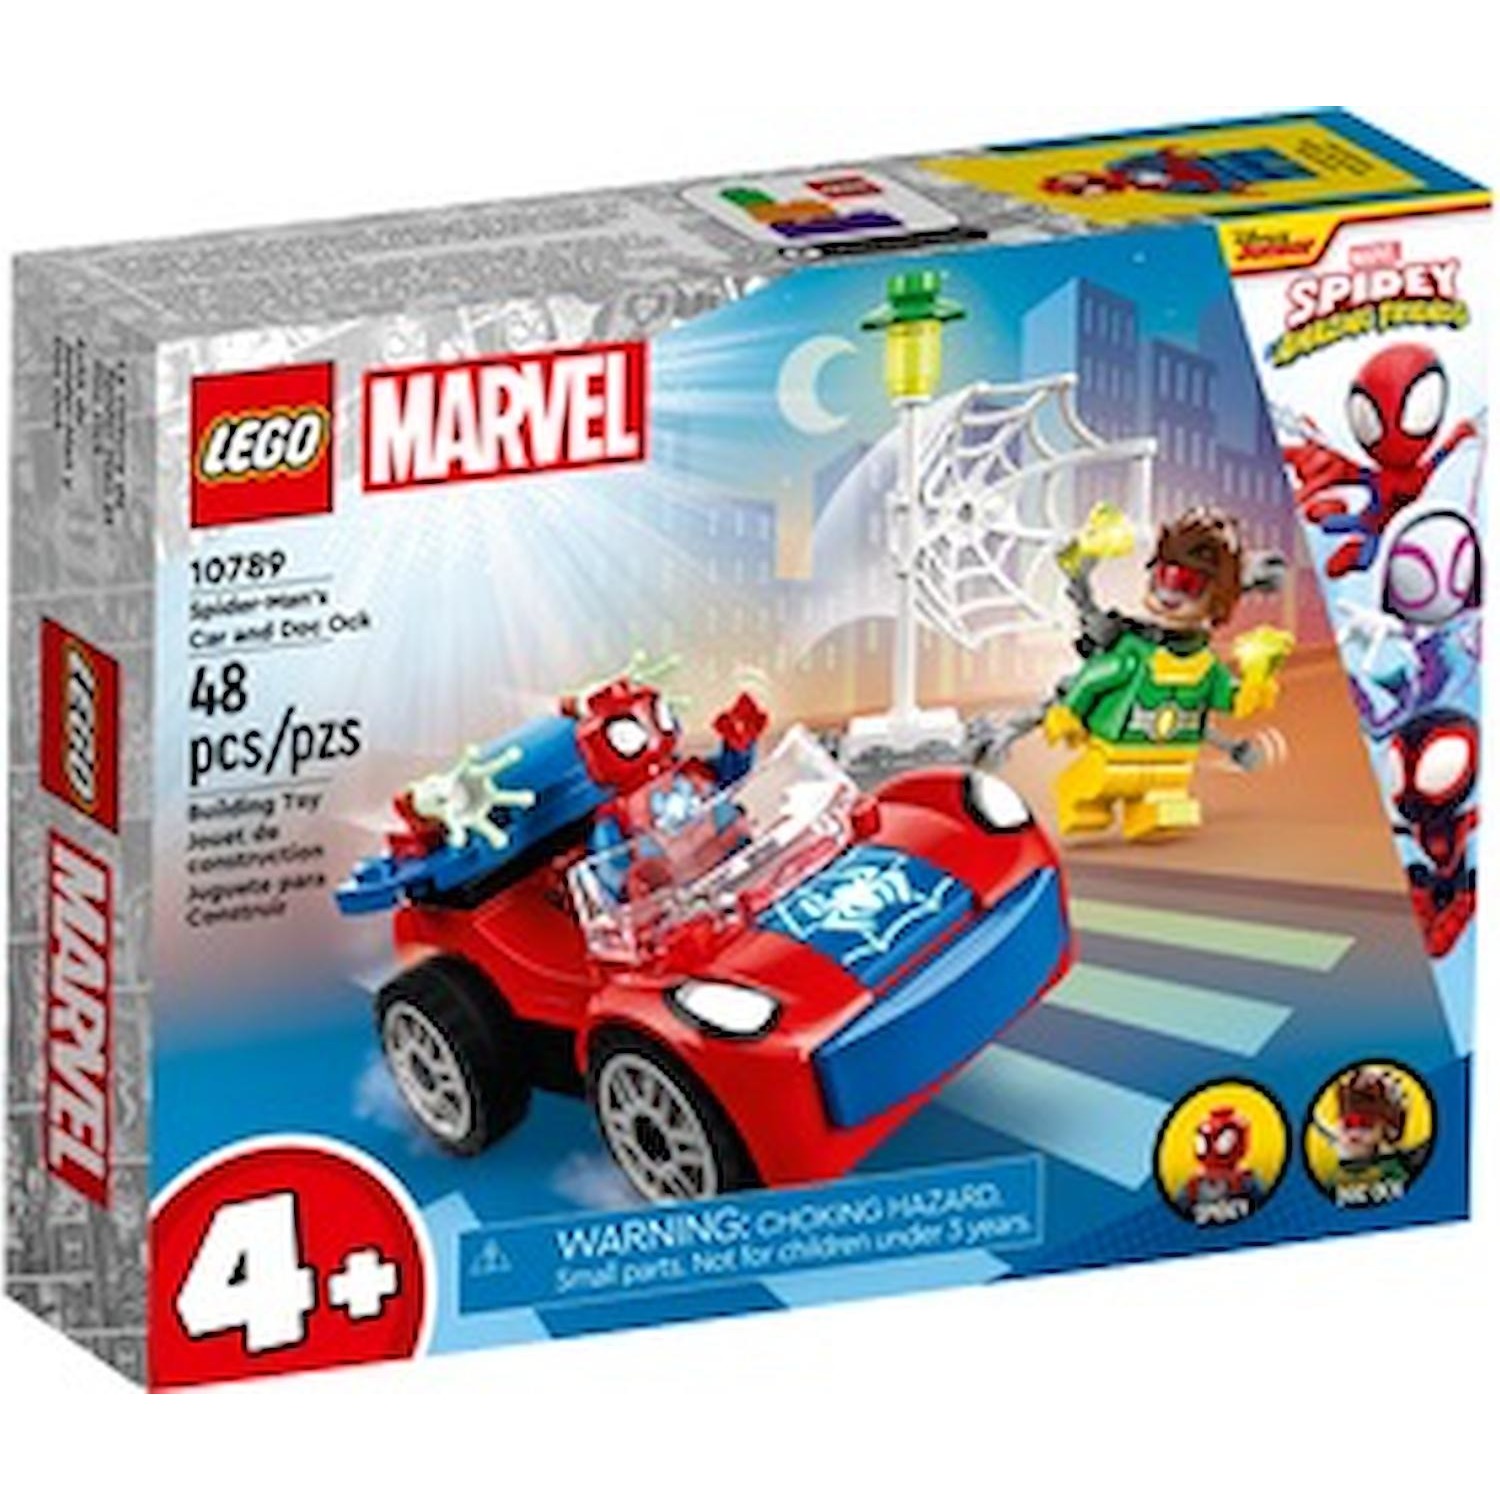 Immagine per Lego Spidey L'auto di Spider-Man e Doc Hock da DIMOStore